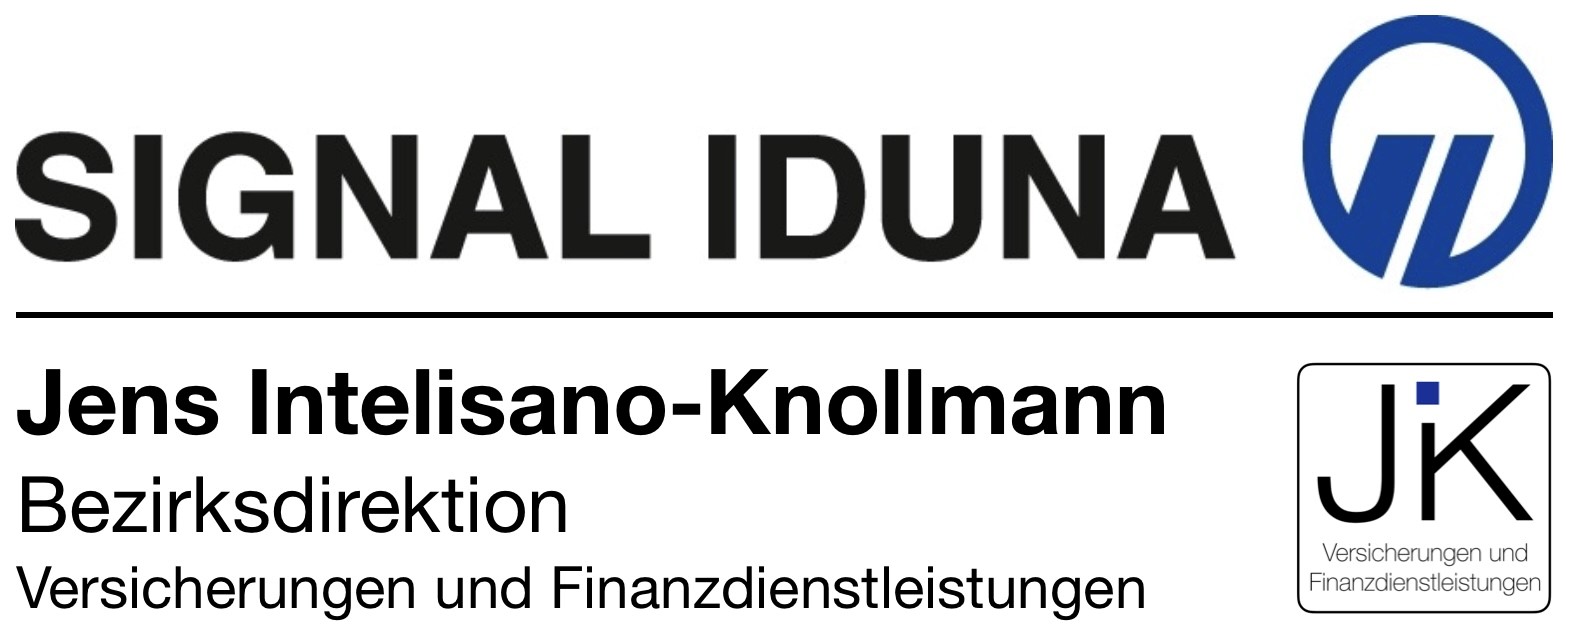 Kundenbild groß 6 SIGNAL IDUNA Versicherung Jens Intelisano-Knollmann